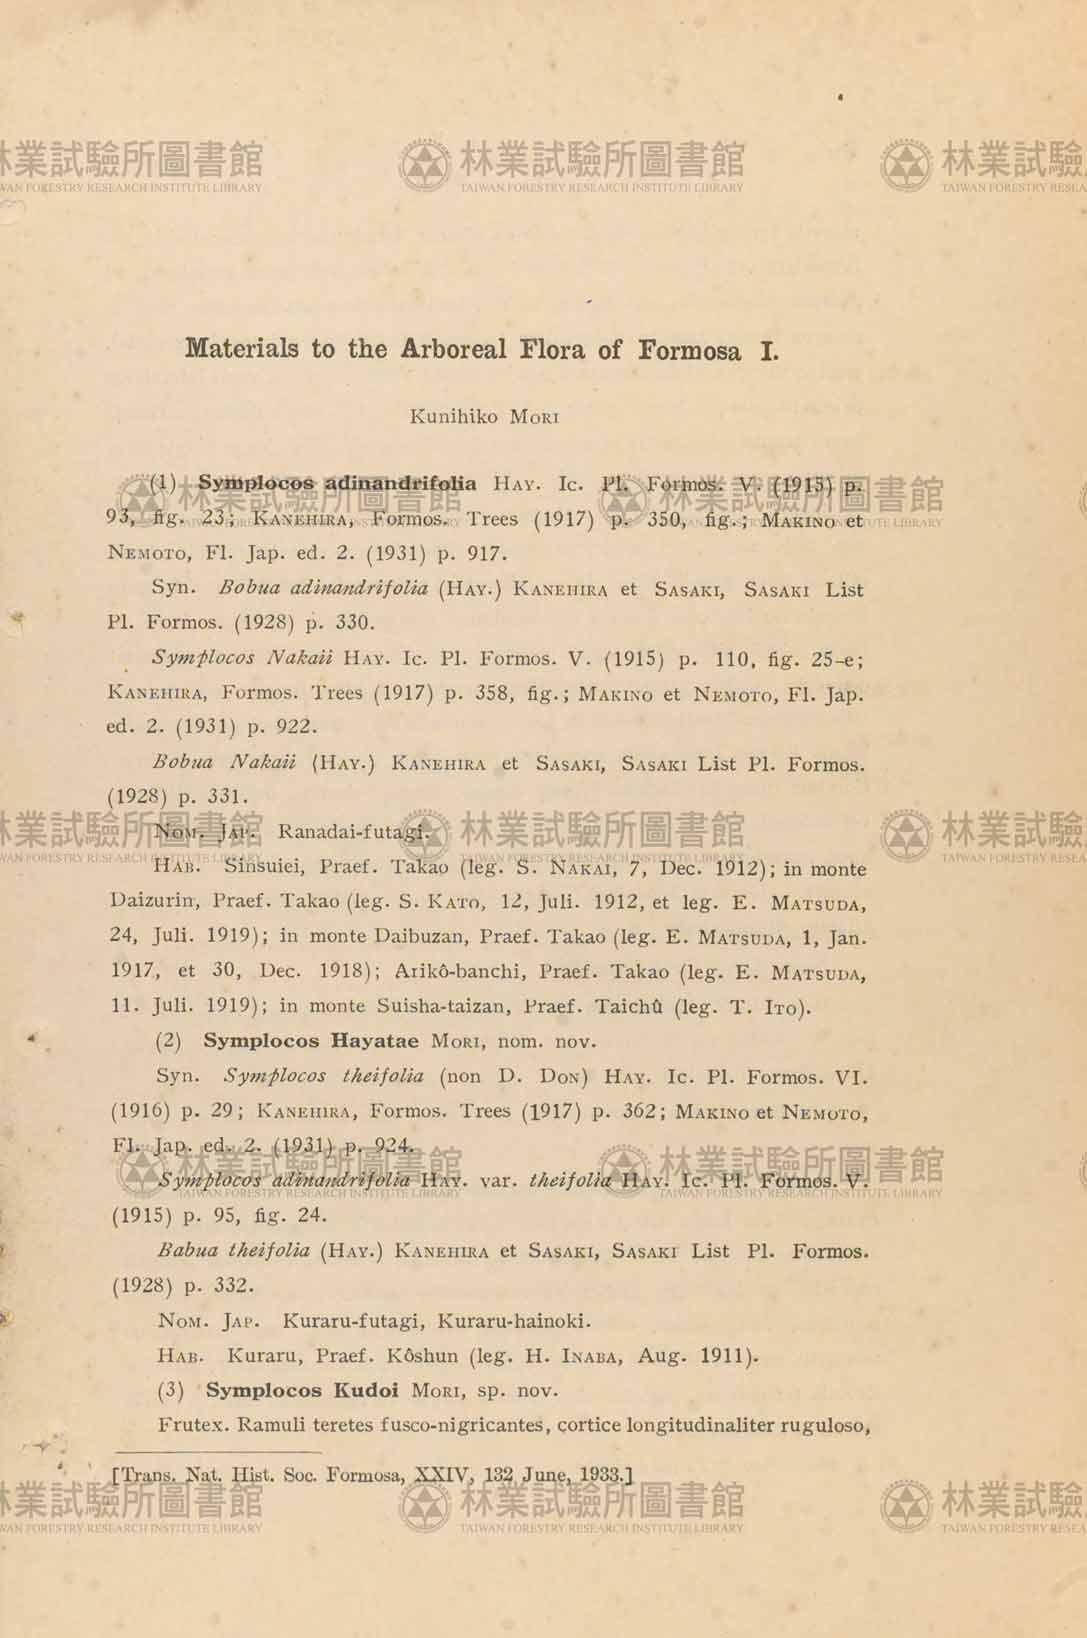 篇名:Materials to the Arboreal Flora of Formosa (I)